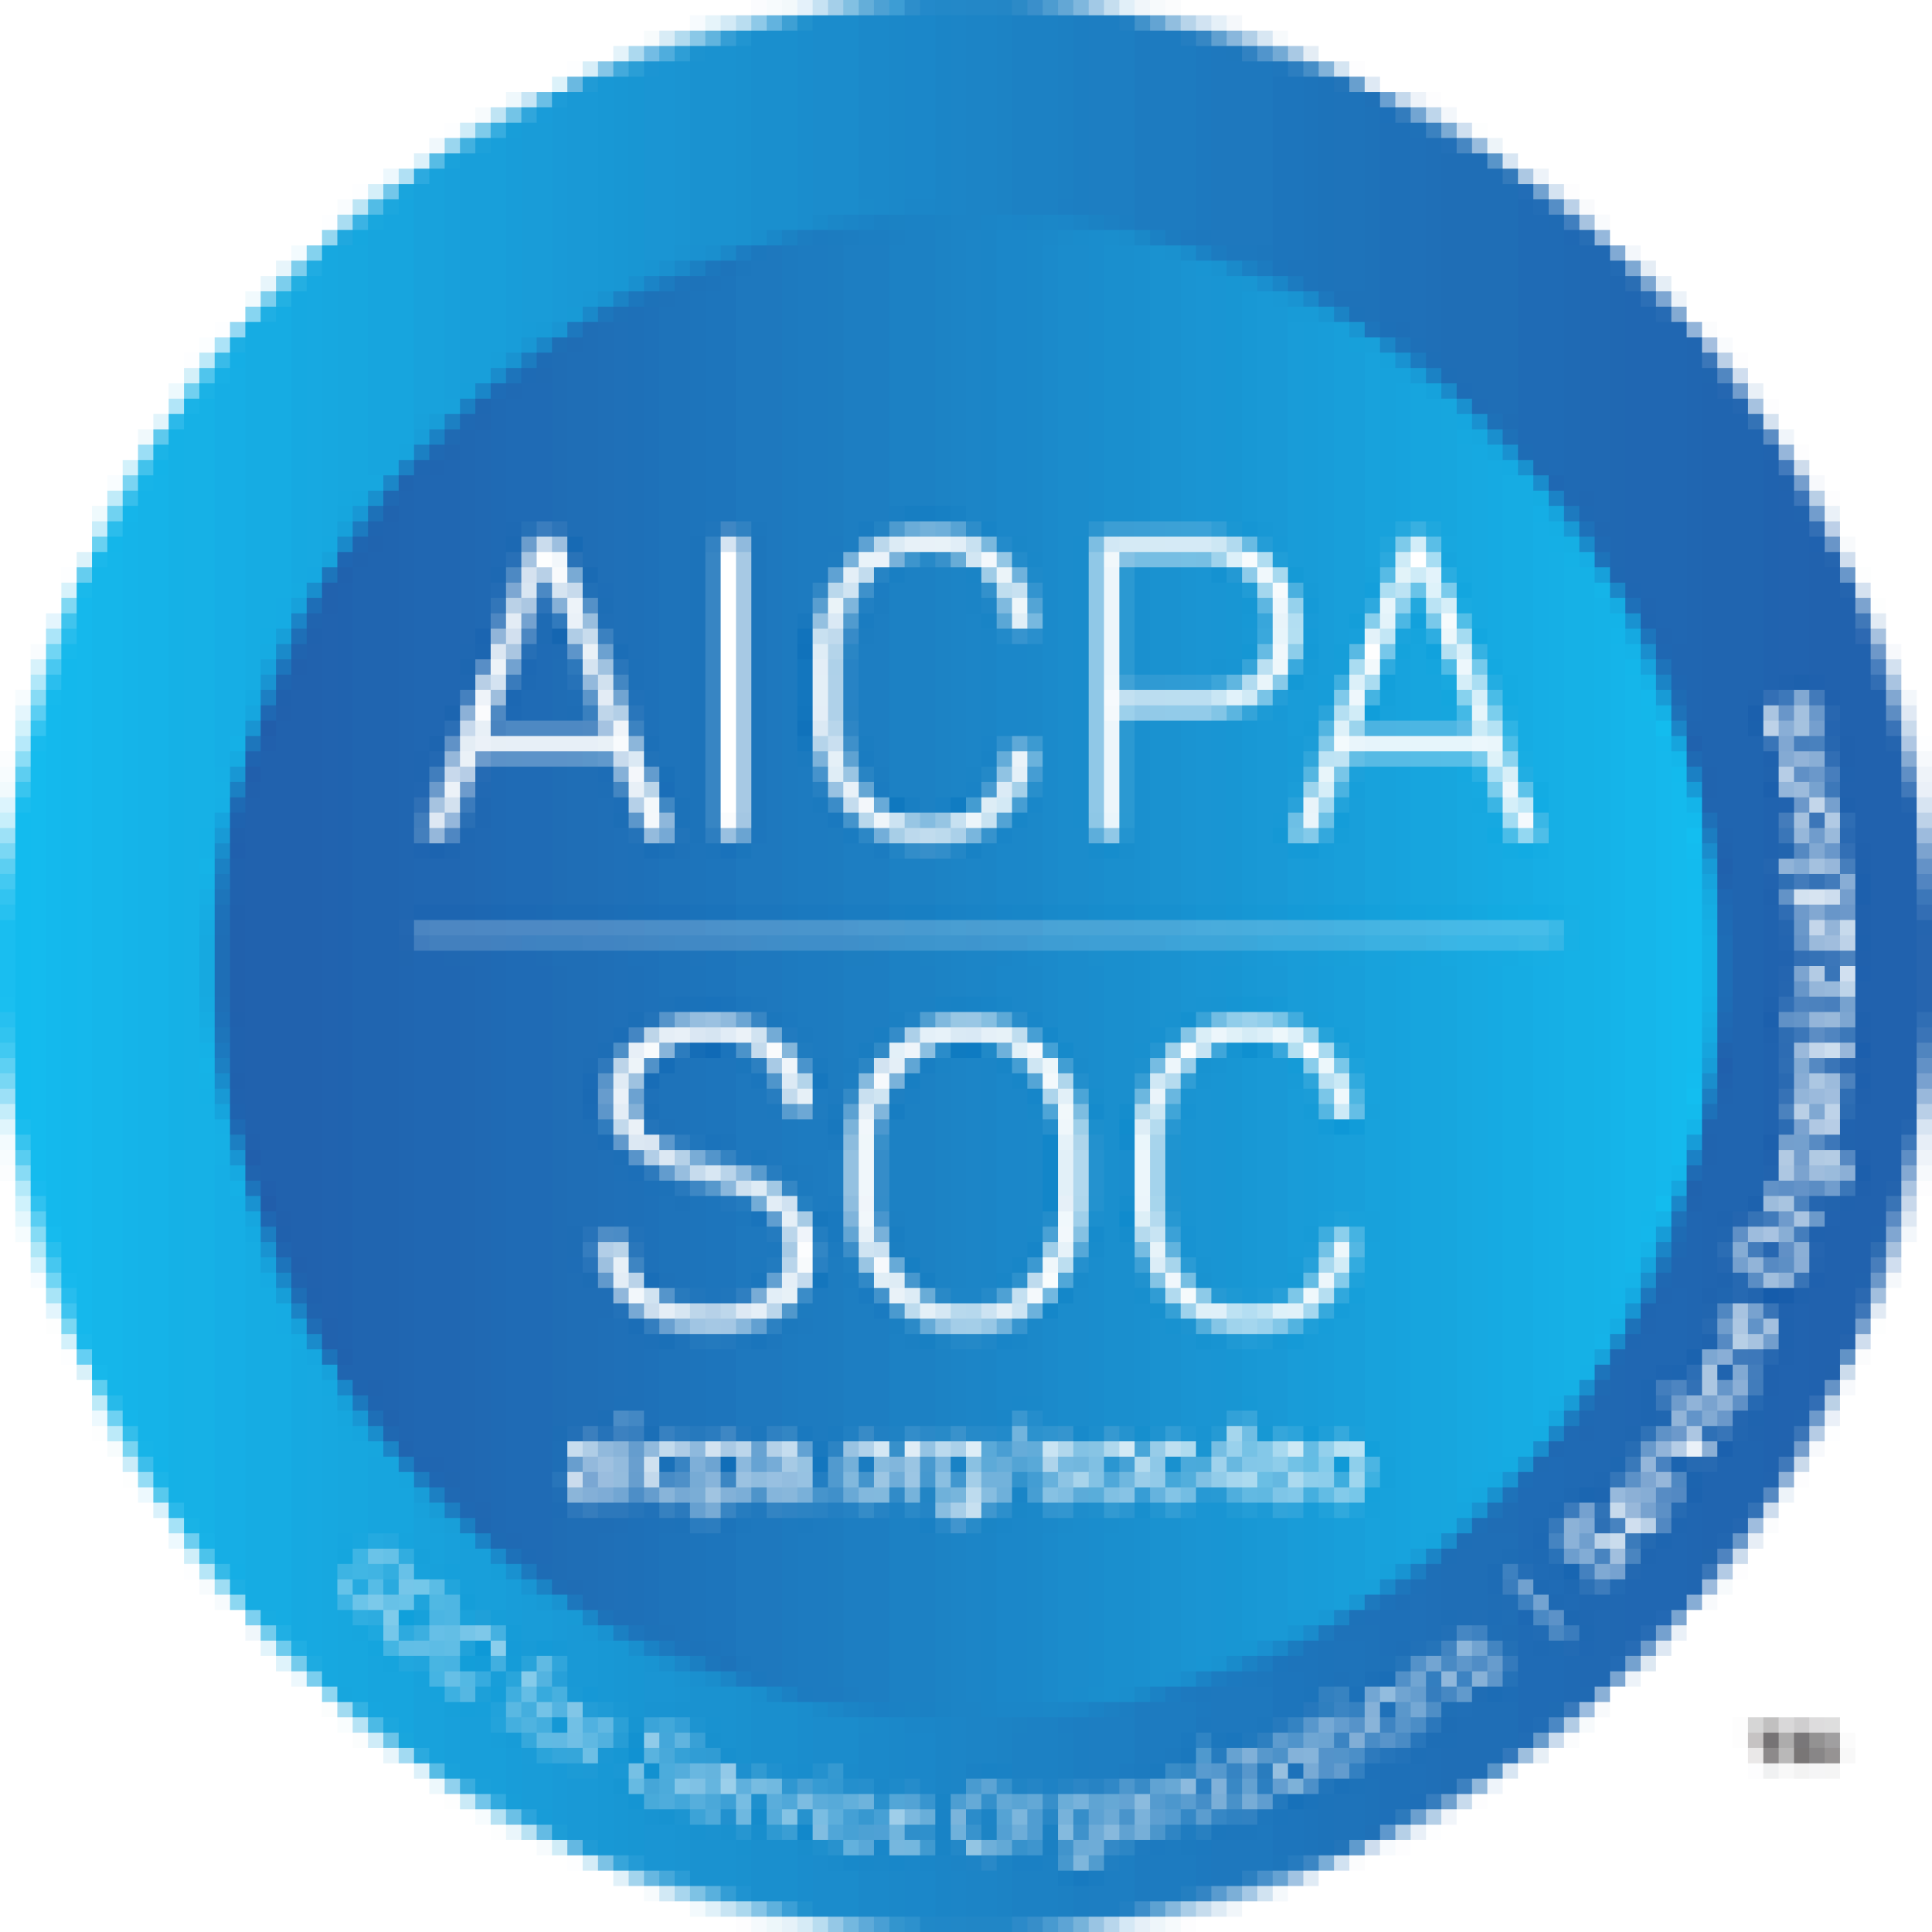 AICPA SOC logo.